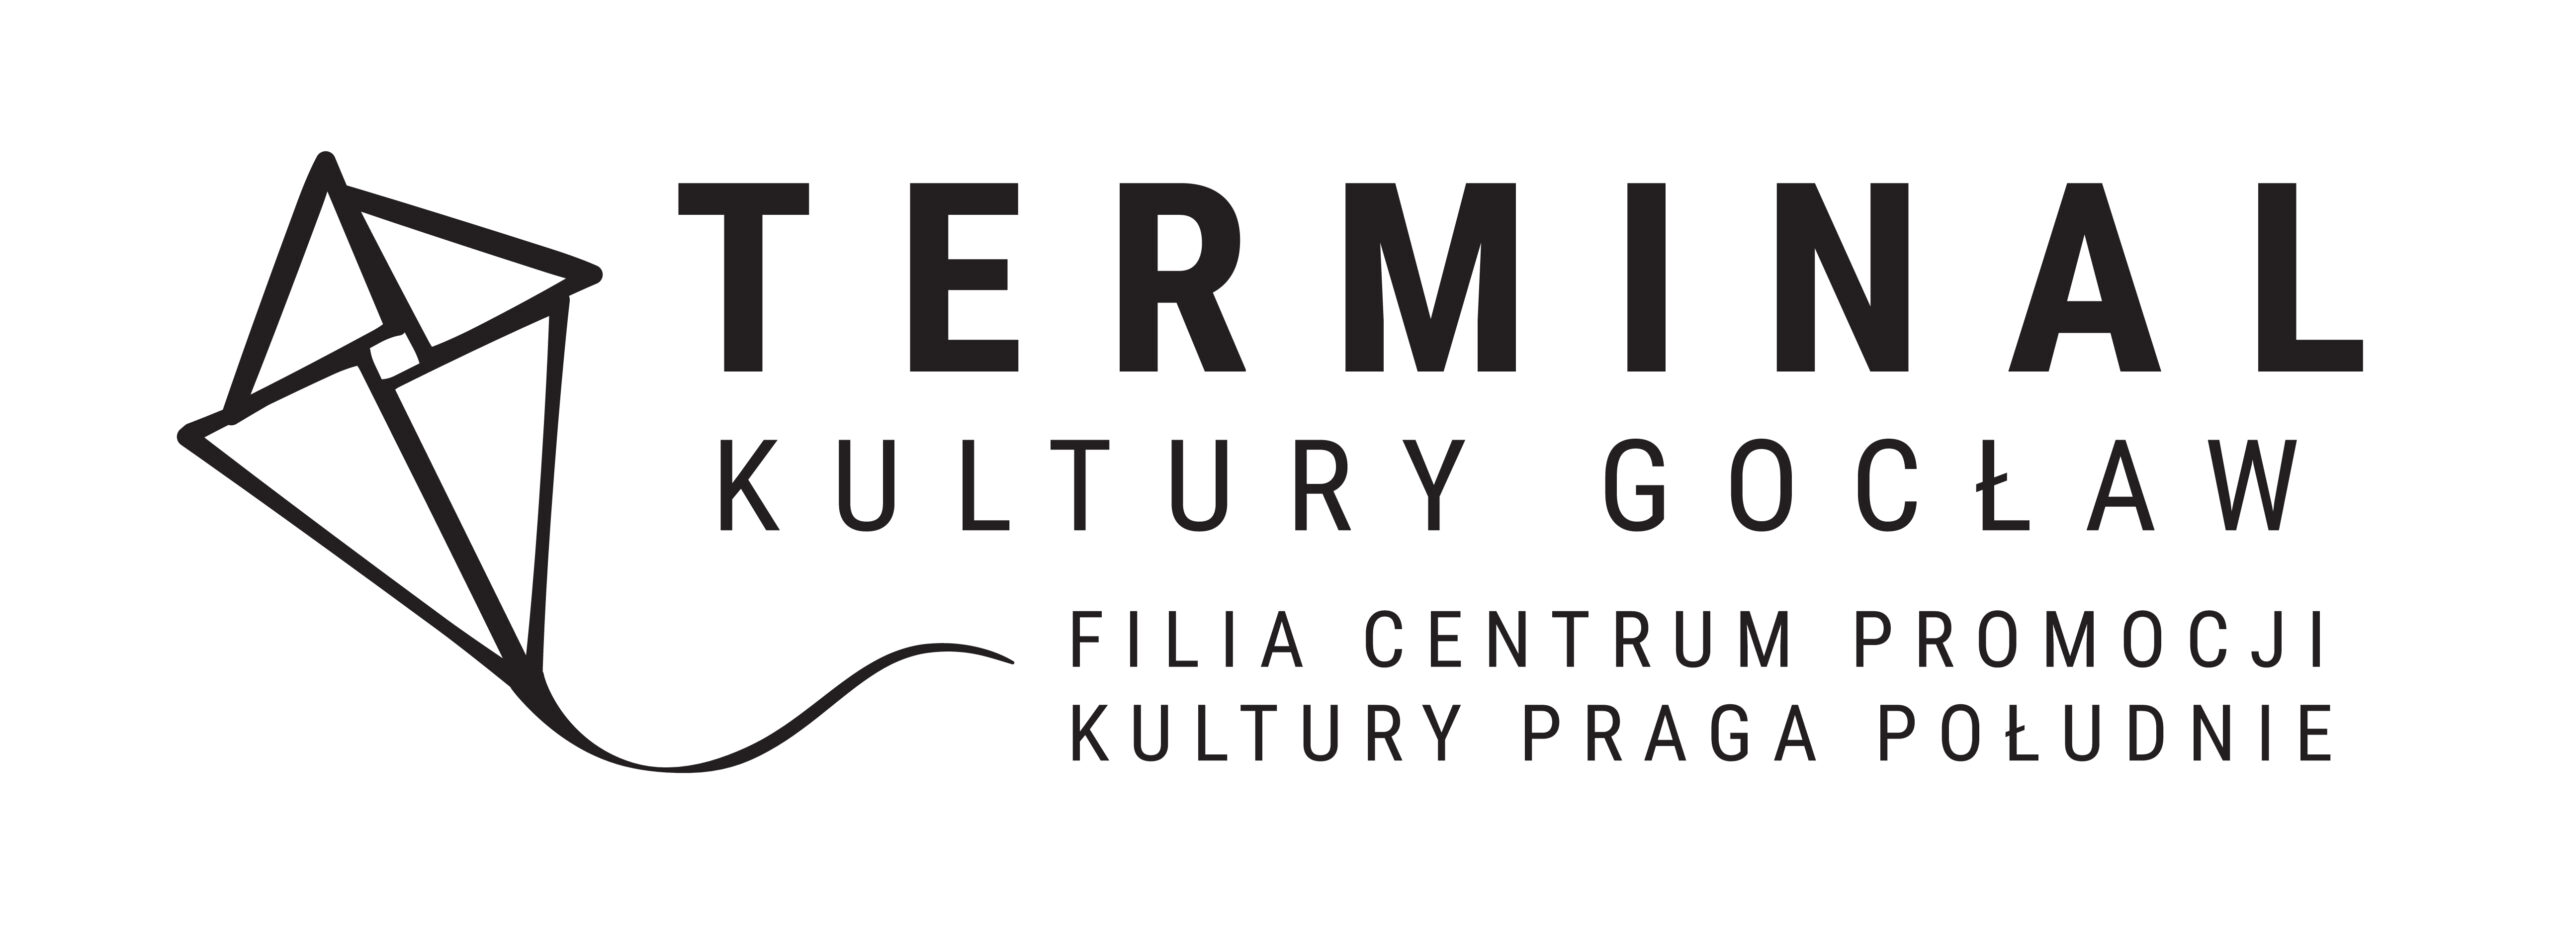 Logo Terminal Kultury Gocław